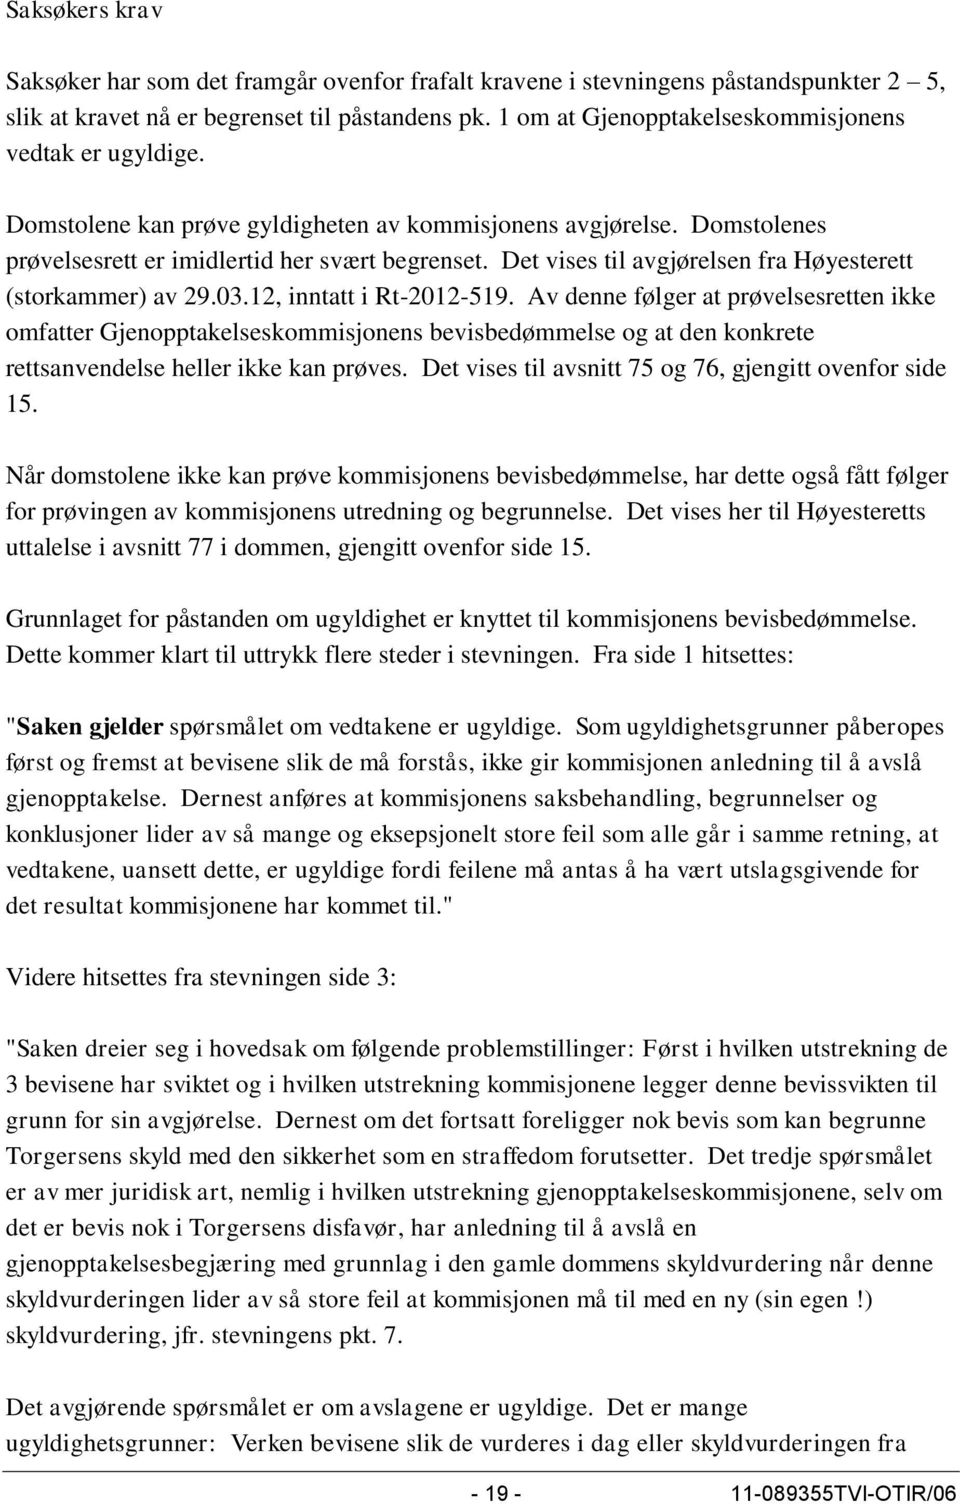 Det vises til avgjørelsen fra Høyesterett (storkammer) av 29.03.12, inntatt i Rt-2012-519.